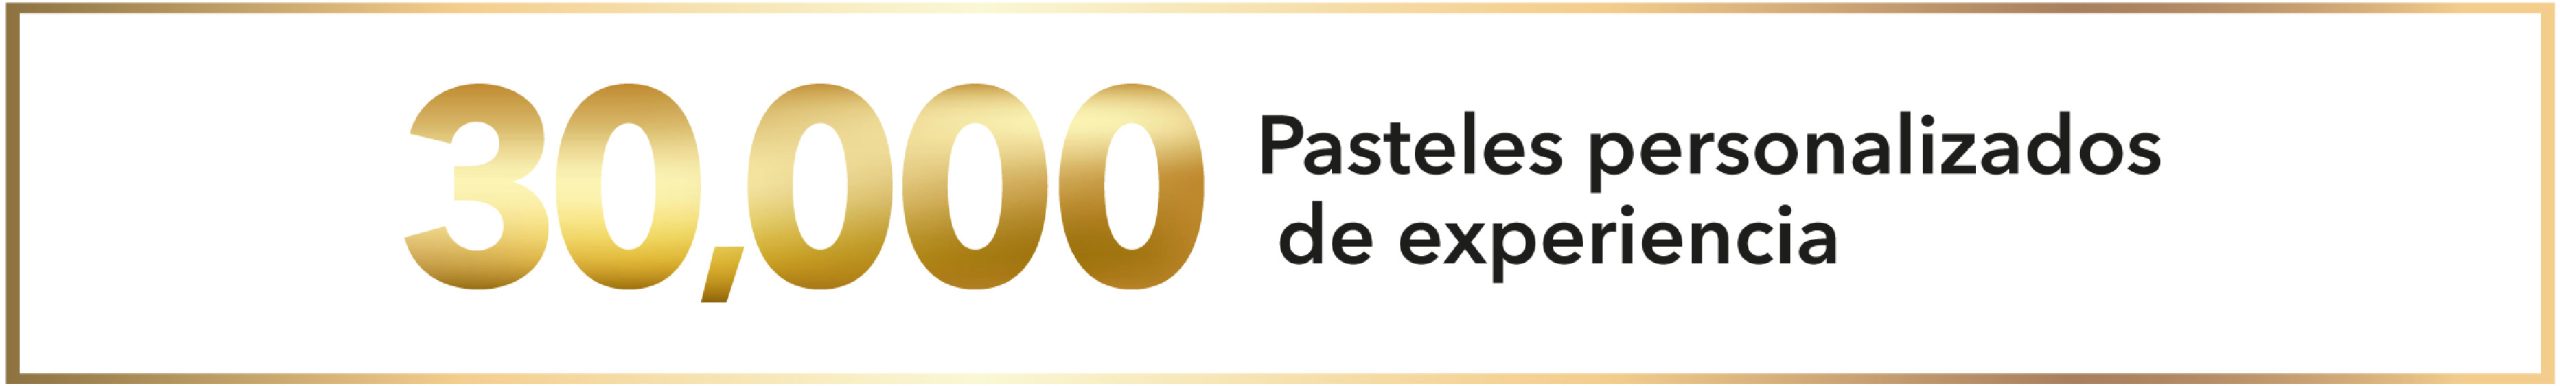 En Pastelería Backen, tenemos 30,000 pasteles personalizados de experiencia en GDL. Pastelerías en GDL. Pasteles de Fondant Pastelerías Guadalajara. Pastelería Backen. Pasteles Personalizados